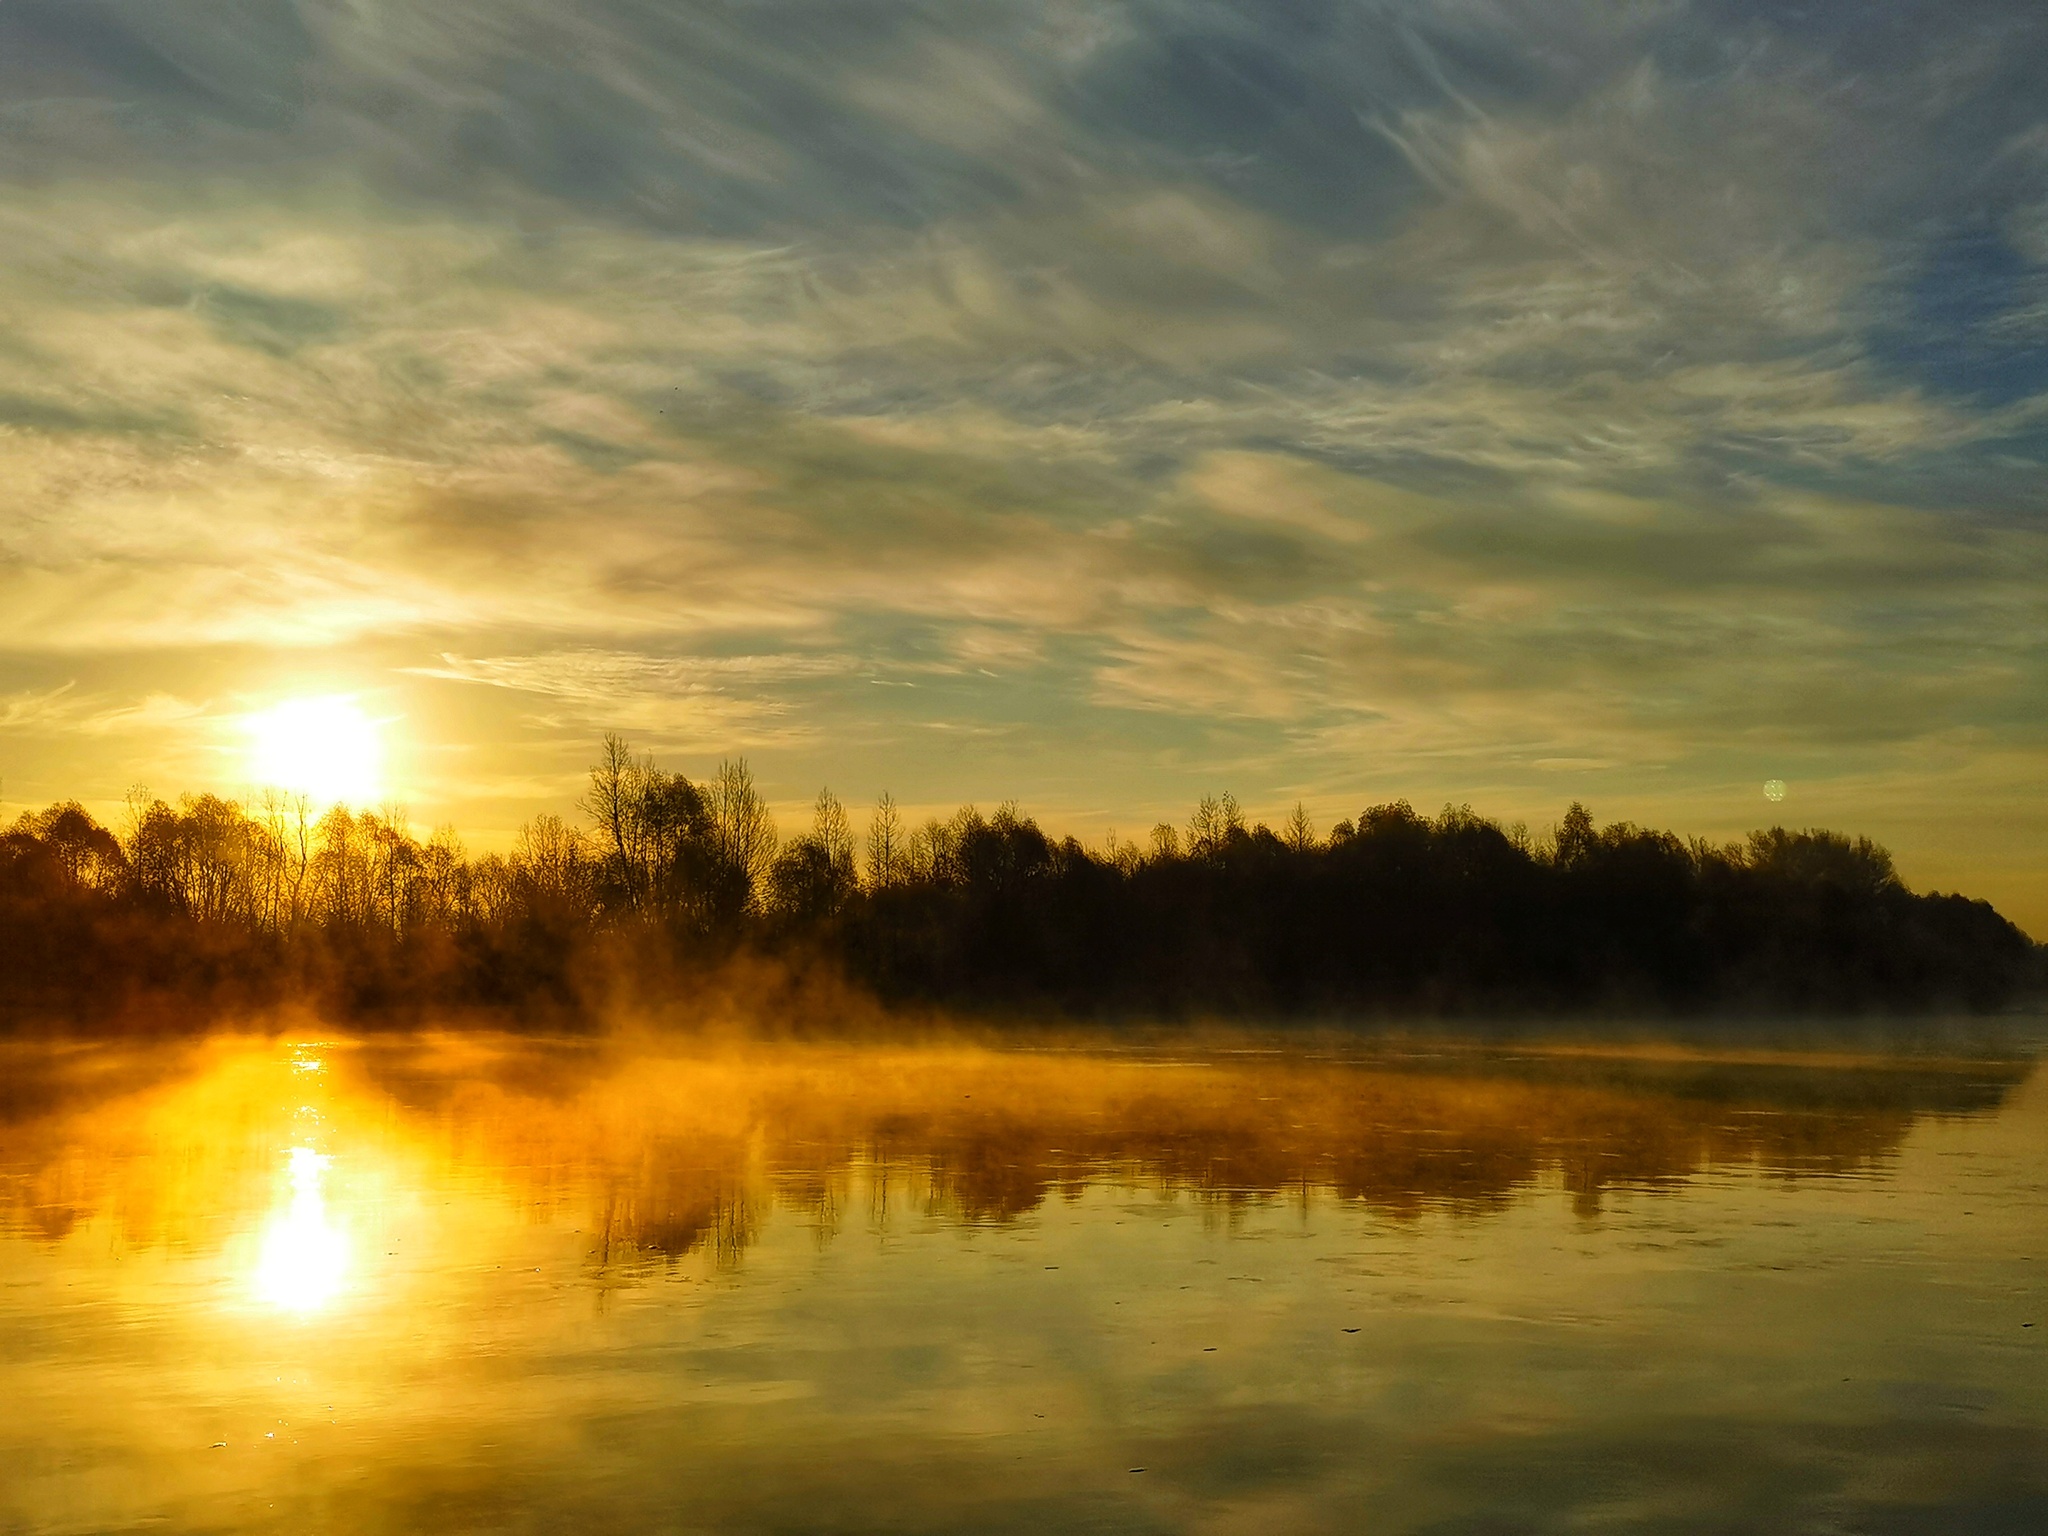 dawn - My, Morning, dawn, Sky, Clouds, Ufimka, Bashkortostan, Mobile photography